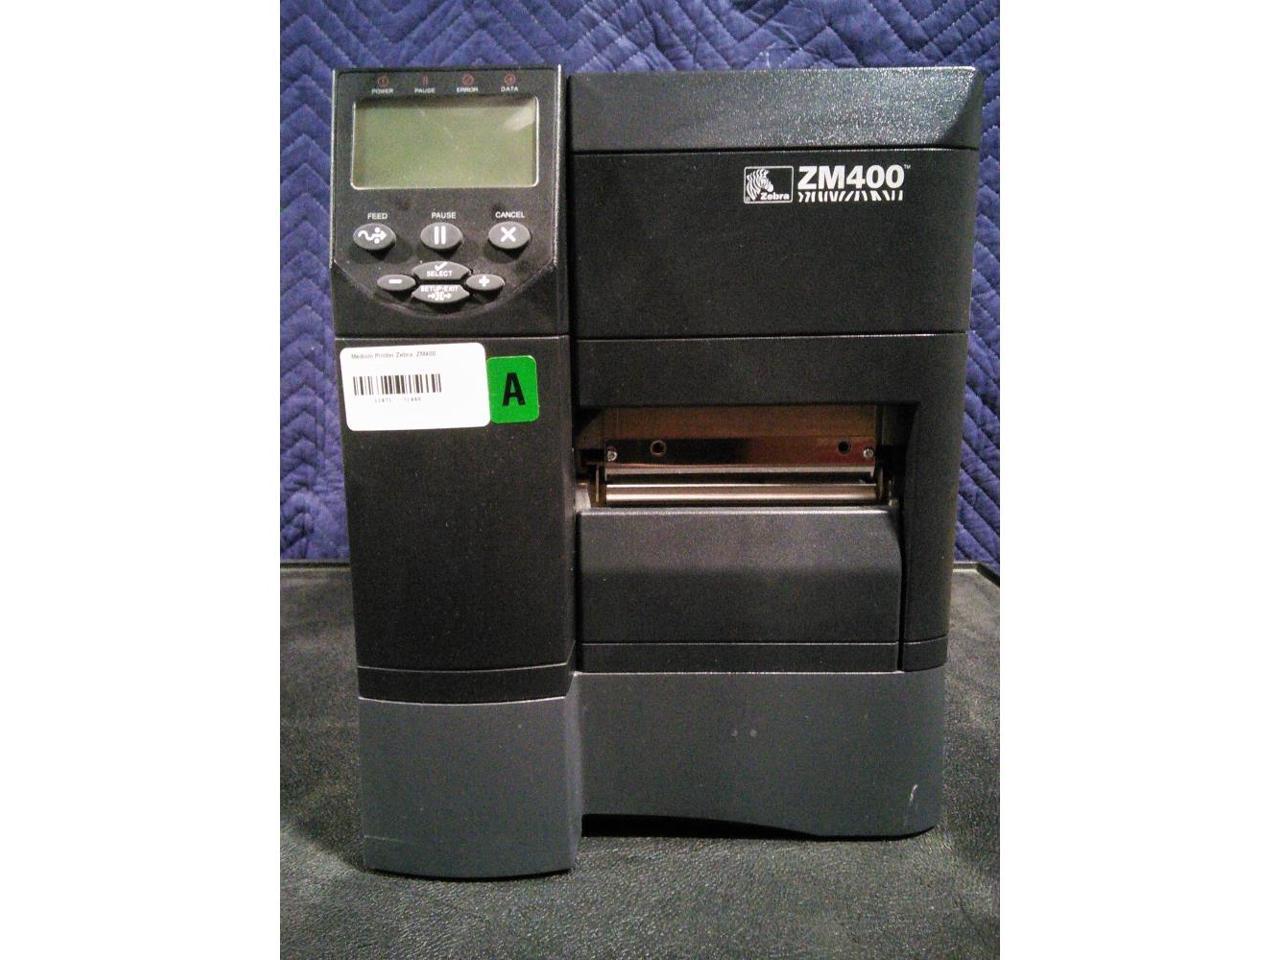 Refurbished Zebra Zm400 Zm400 2001 0100t Label Thermal Printer 6134